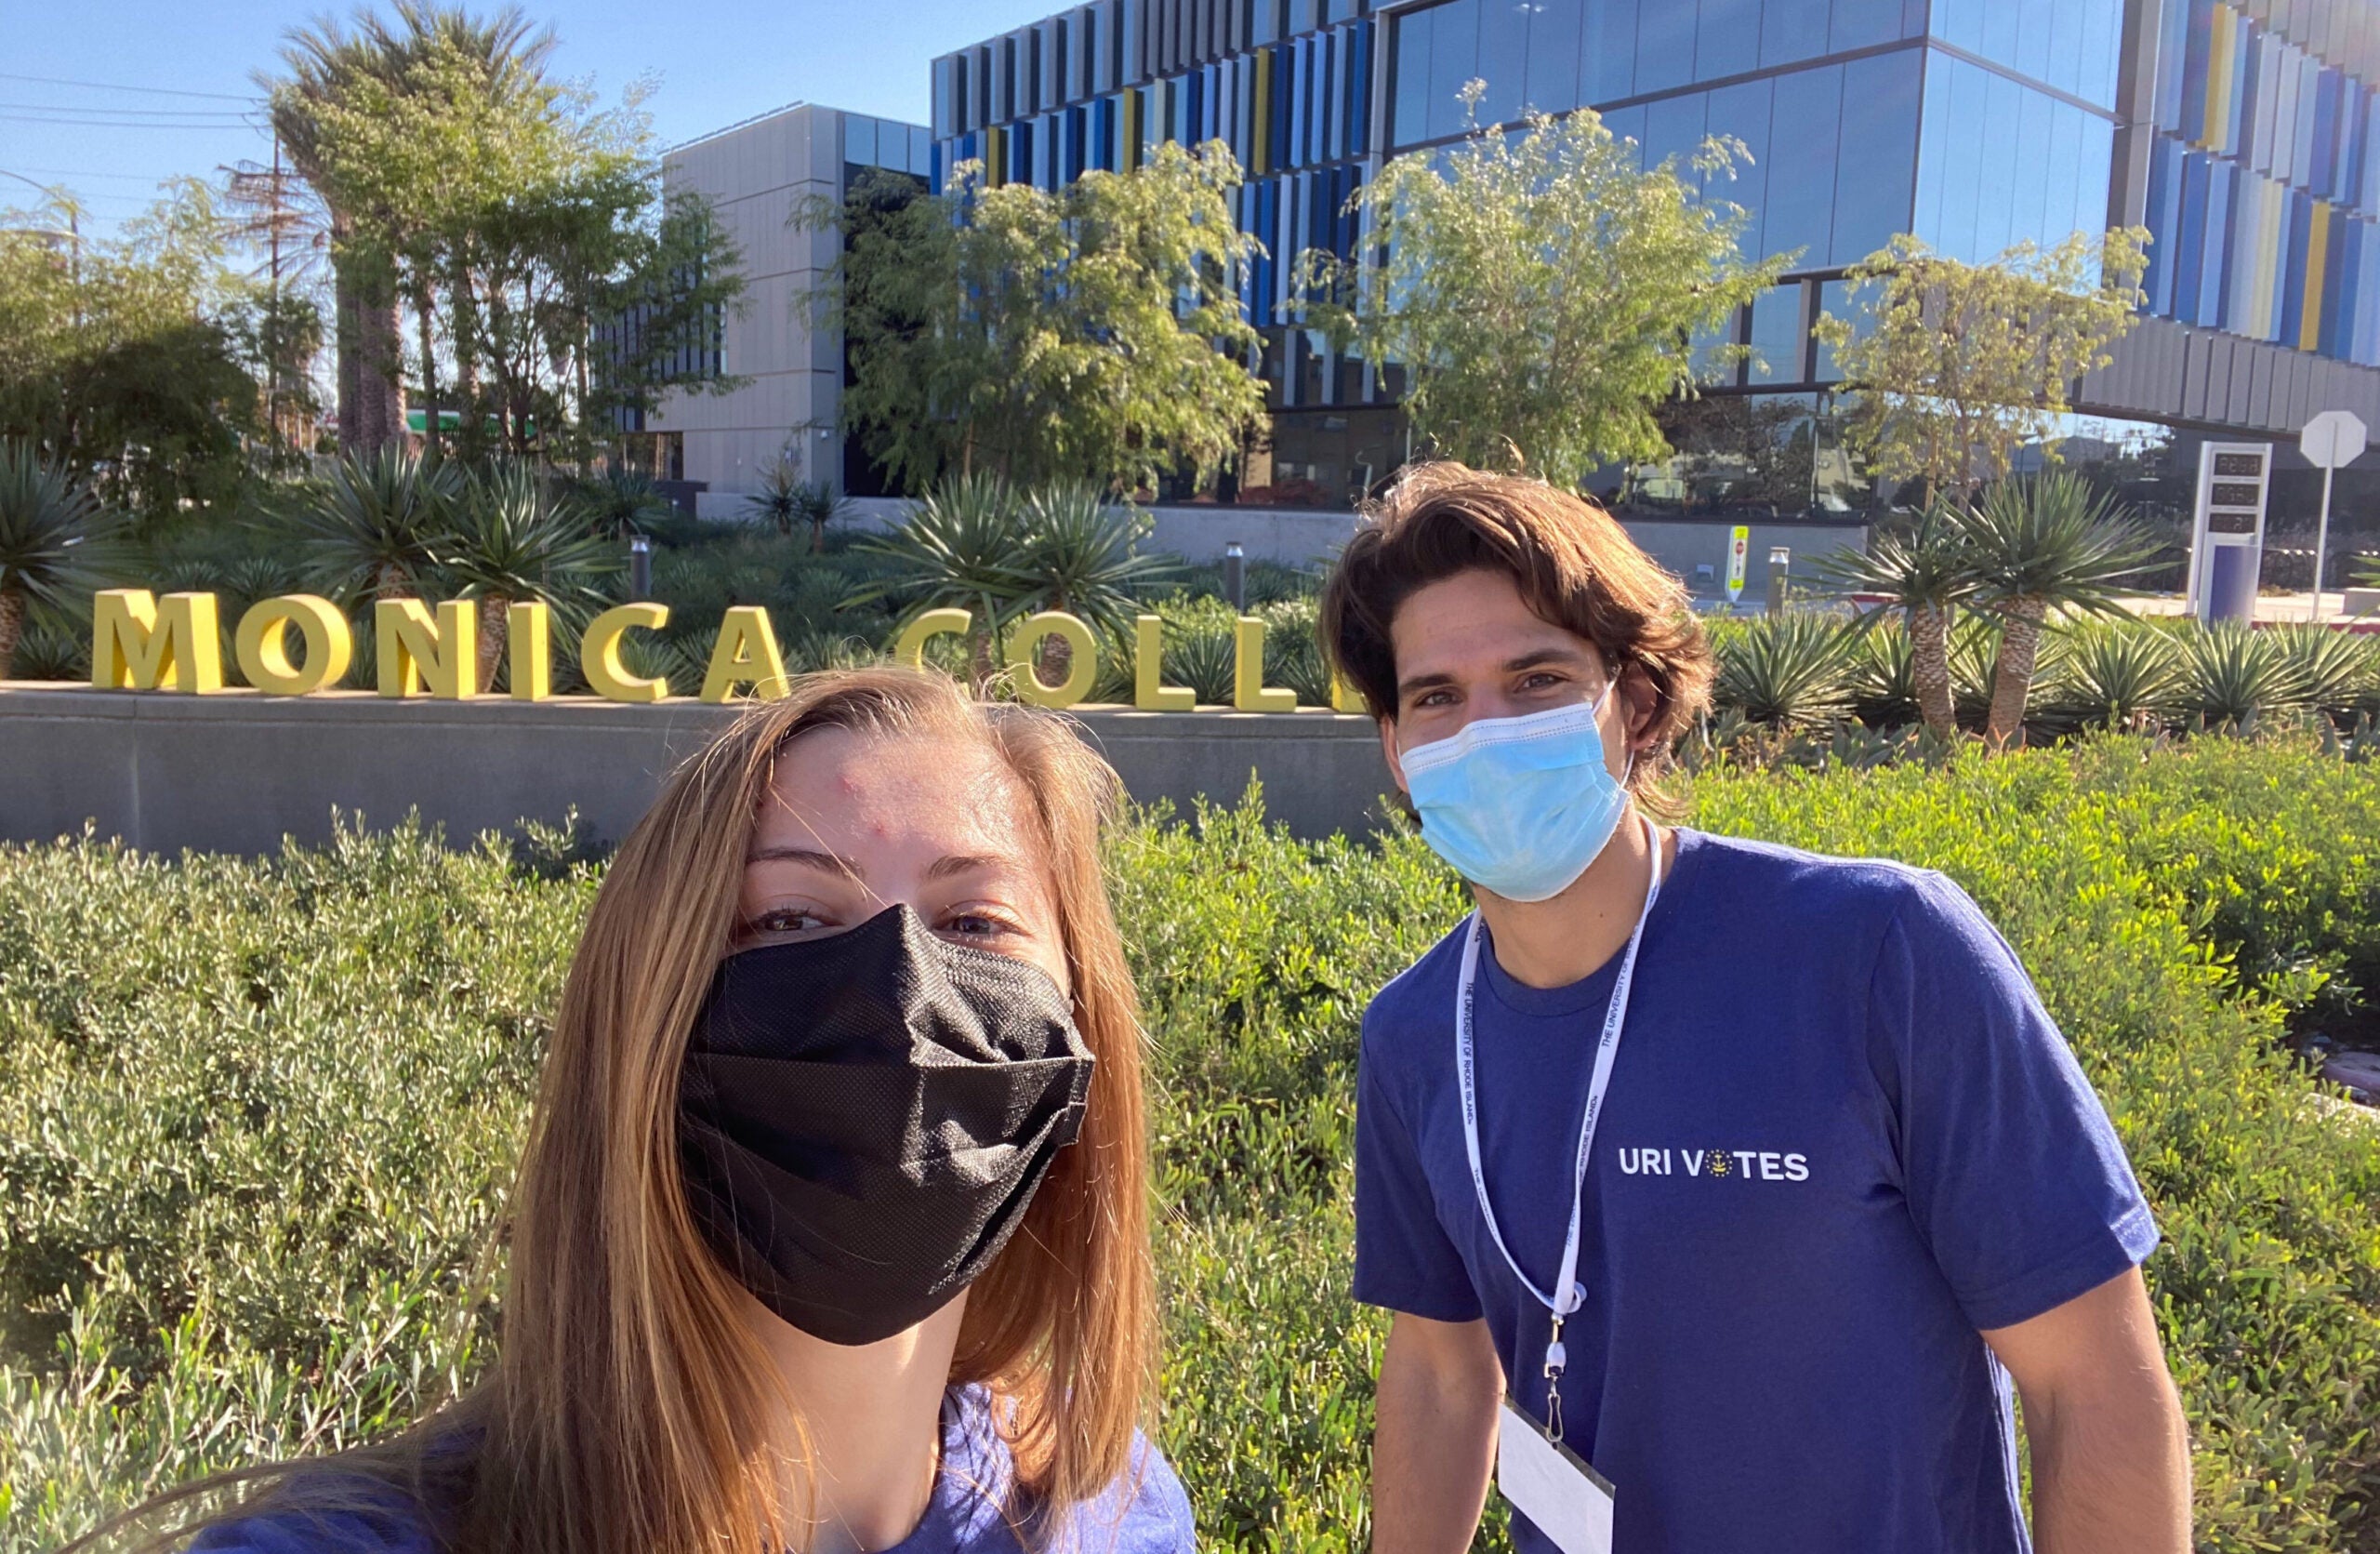 URI engineering graduate students Tim Jonas and Emma McCool-Guglielmo observed voters at Santa Monica College